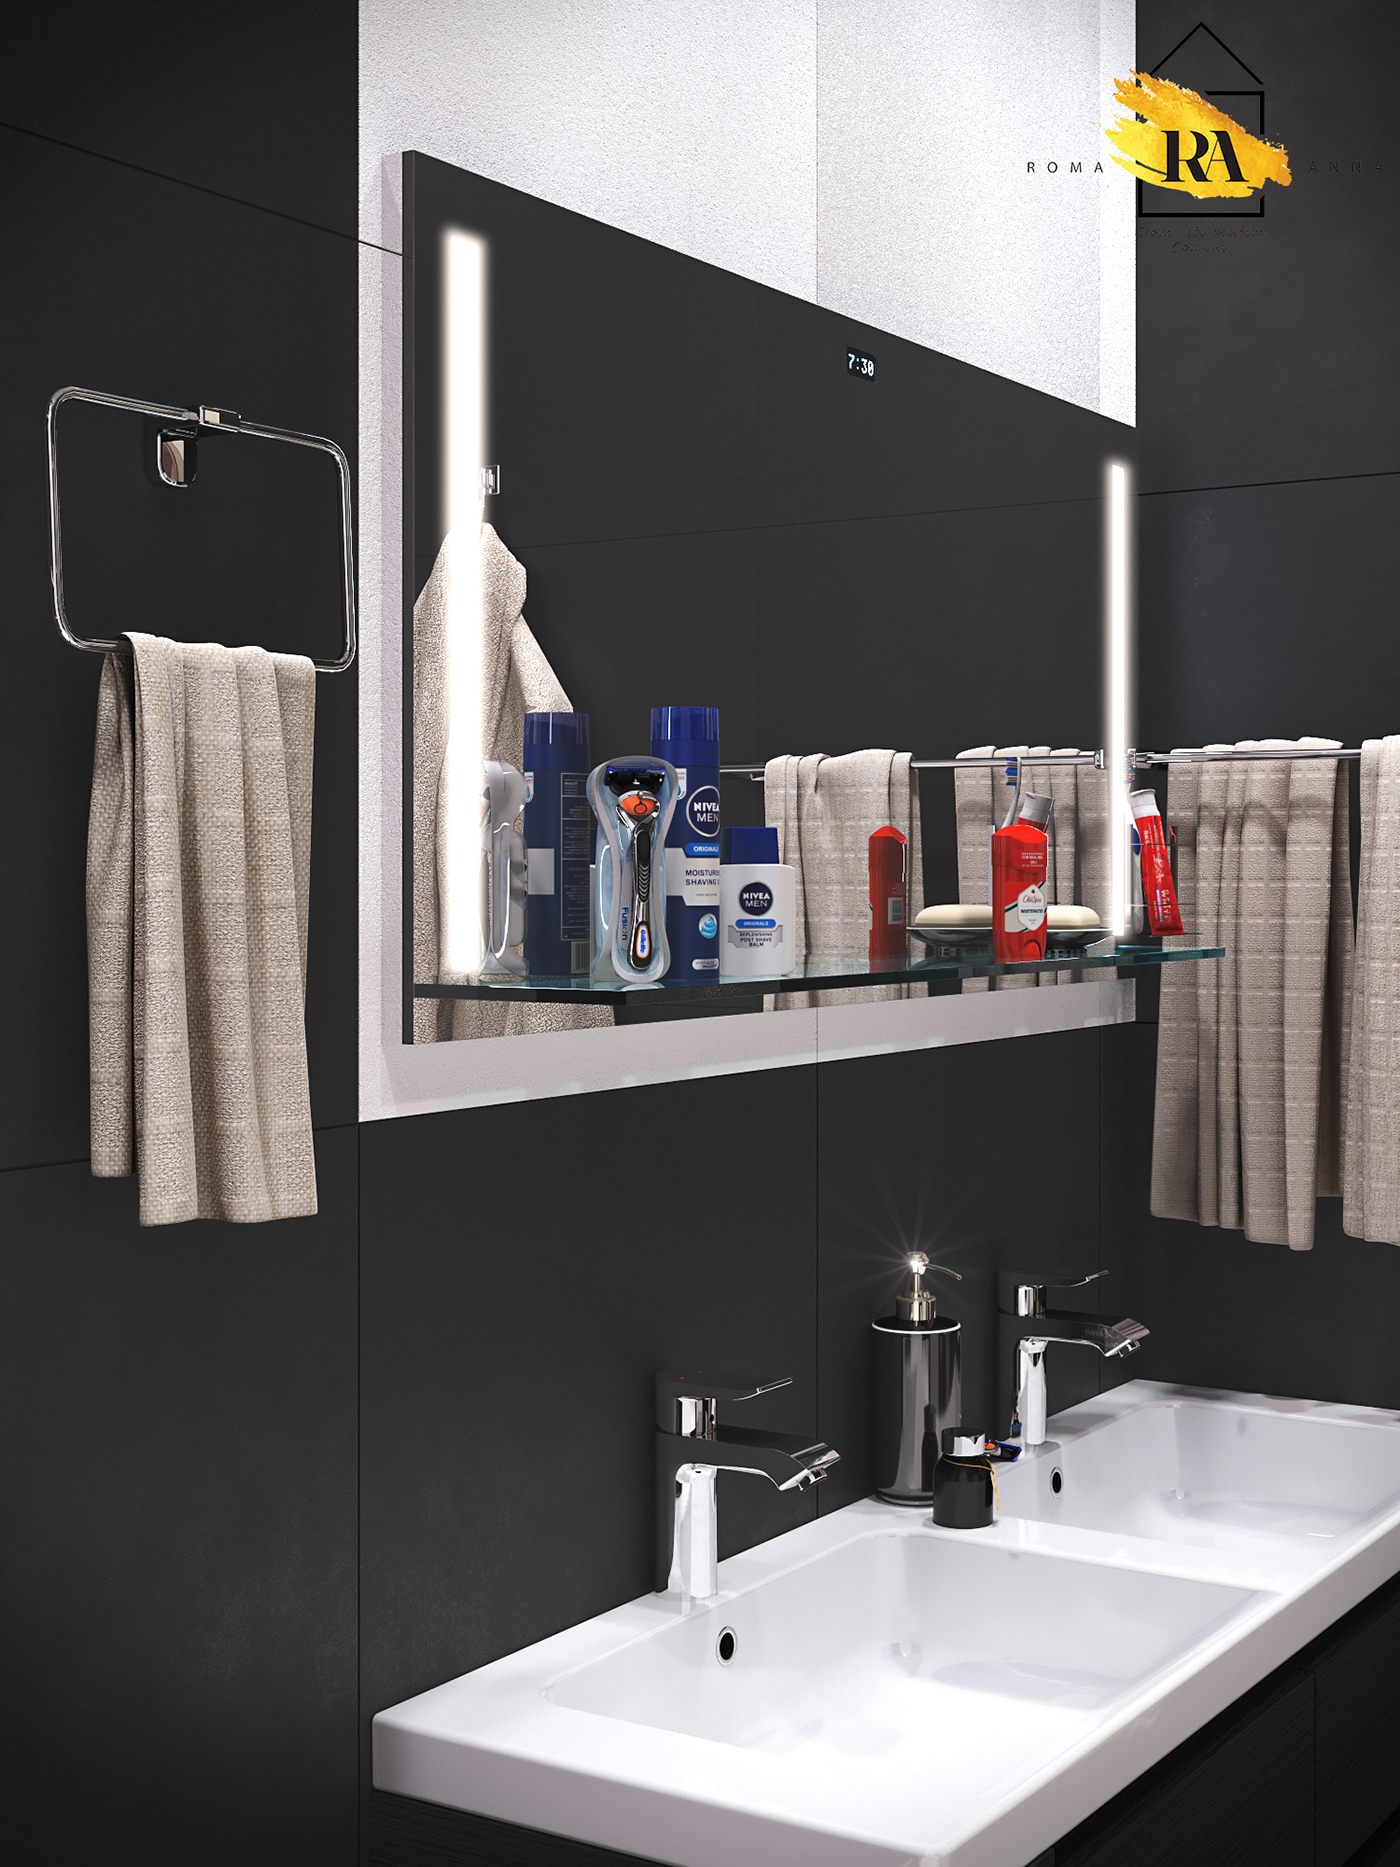 बाथरूम का दृश्य 3d max corona render में प्रस्तुत छवि